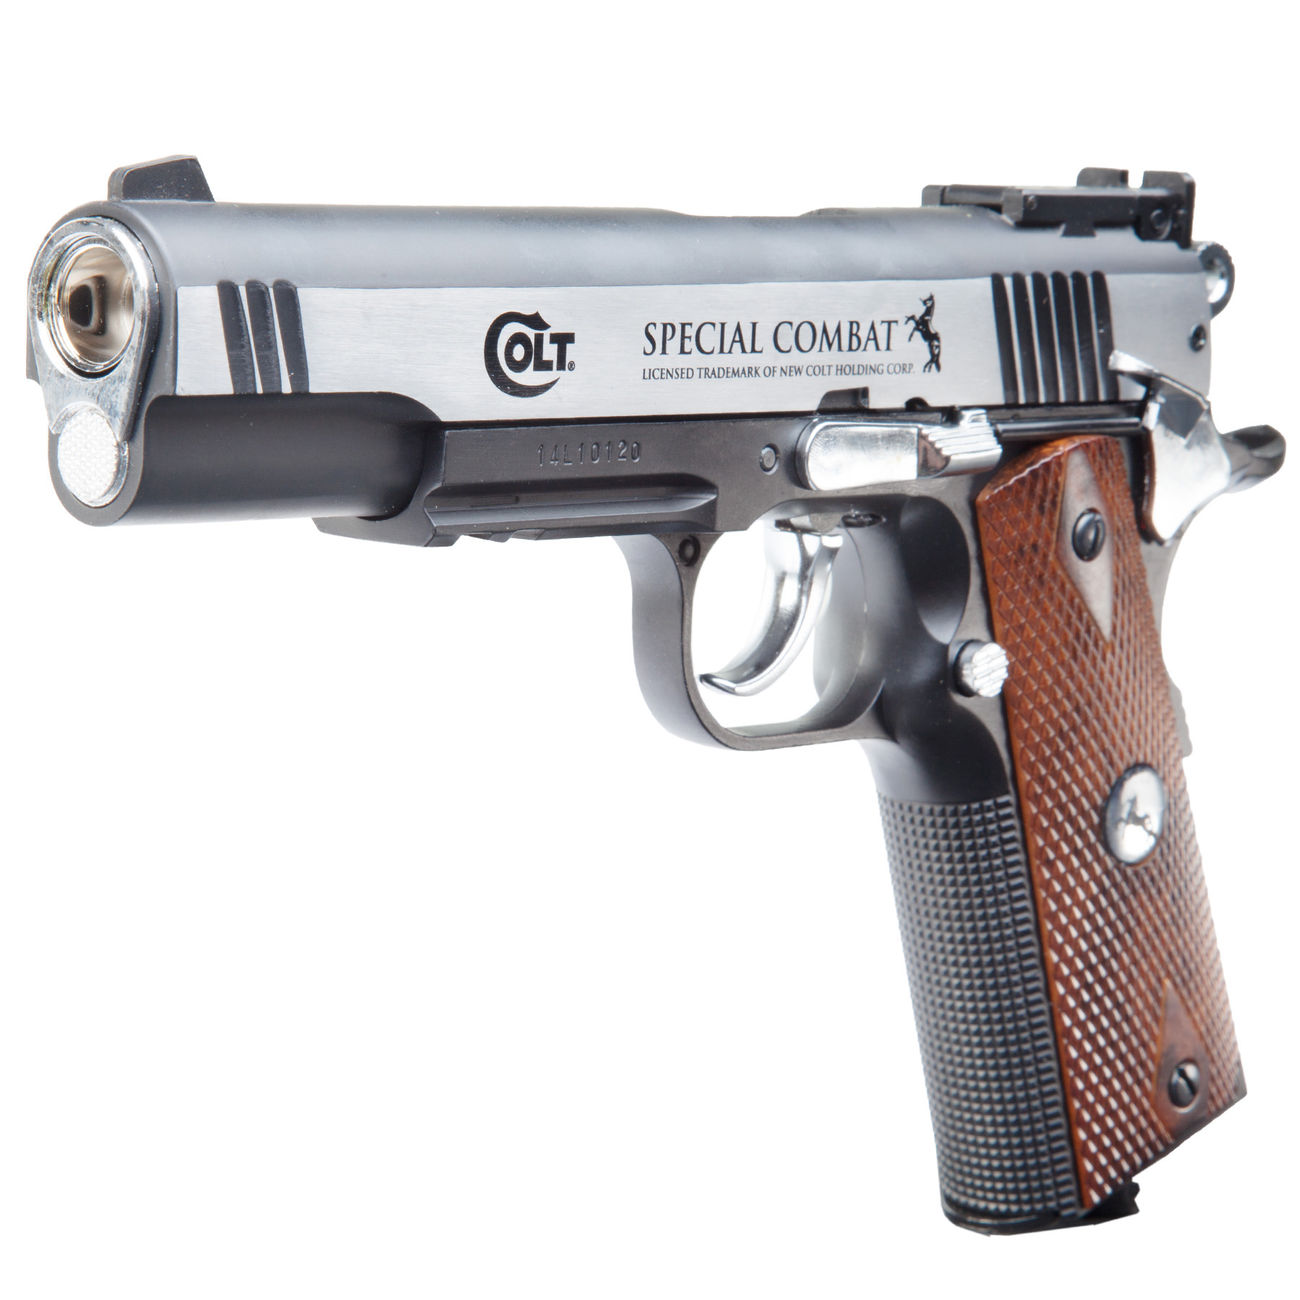 Colt Spezial Combat Classic CO2 Pistole 4,5 mm BB Starterset Bild 1